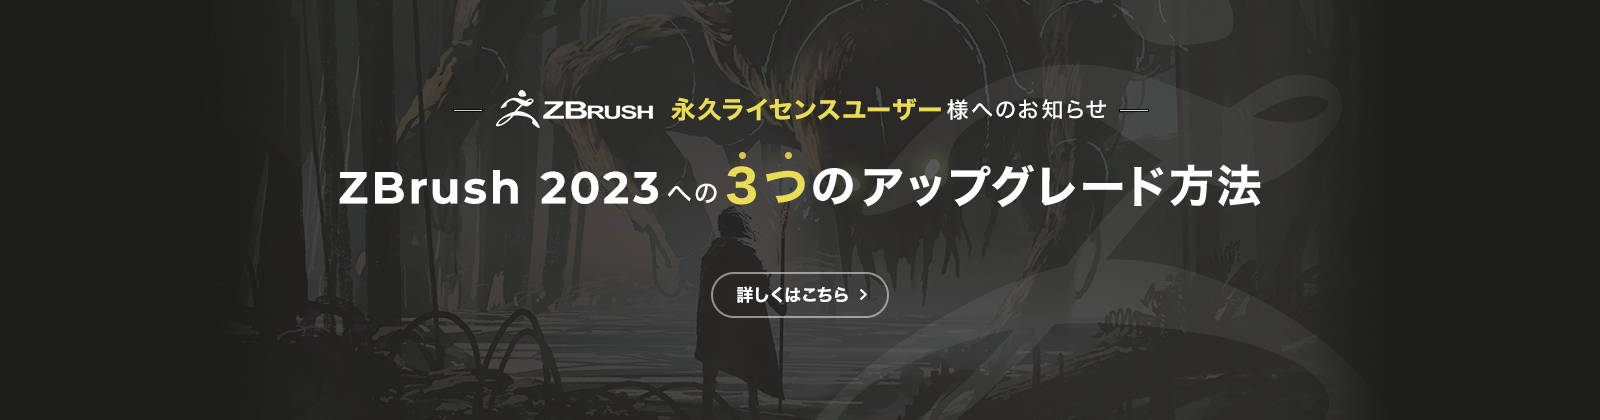 ZBrush永久ライセンスユーザー様へのお知らせ。ZBrush 2023 へのアップグレードには、3つの方法があります。